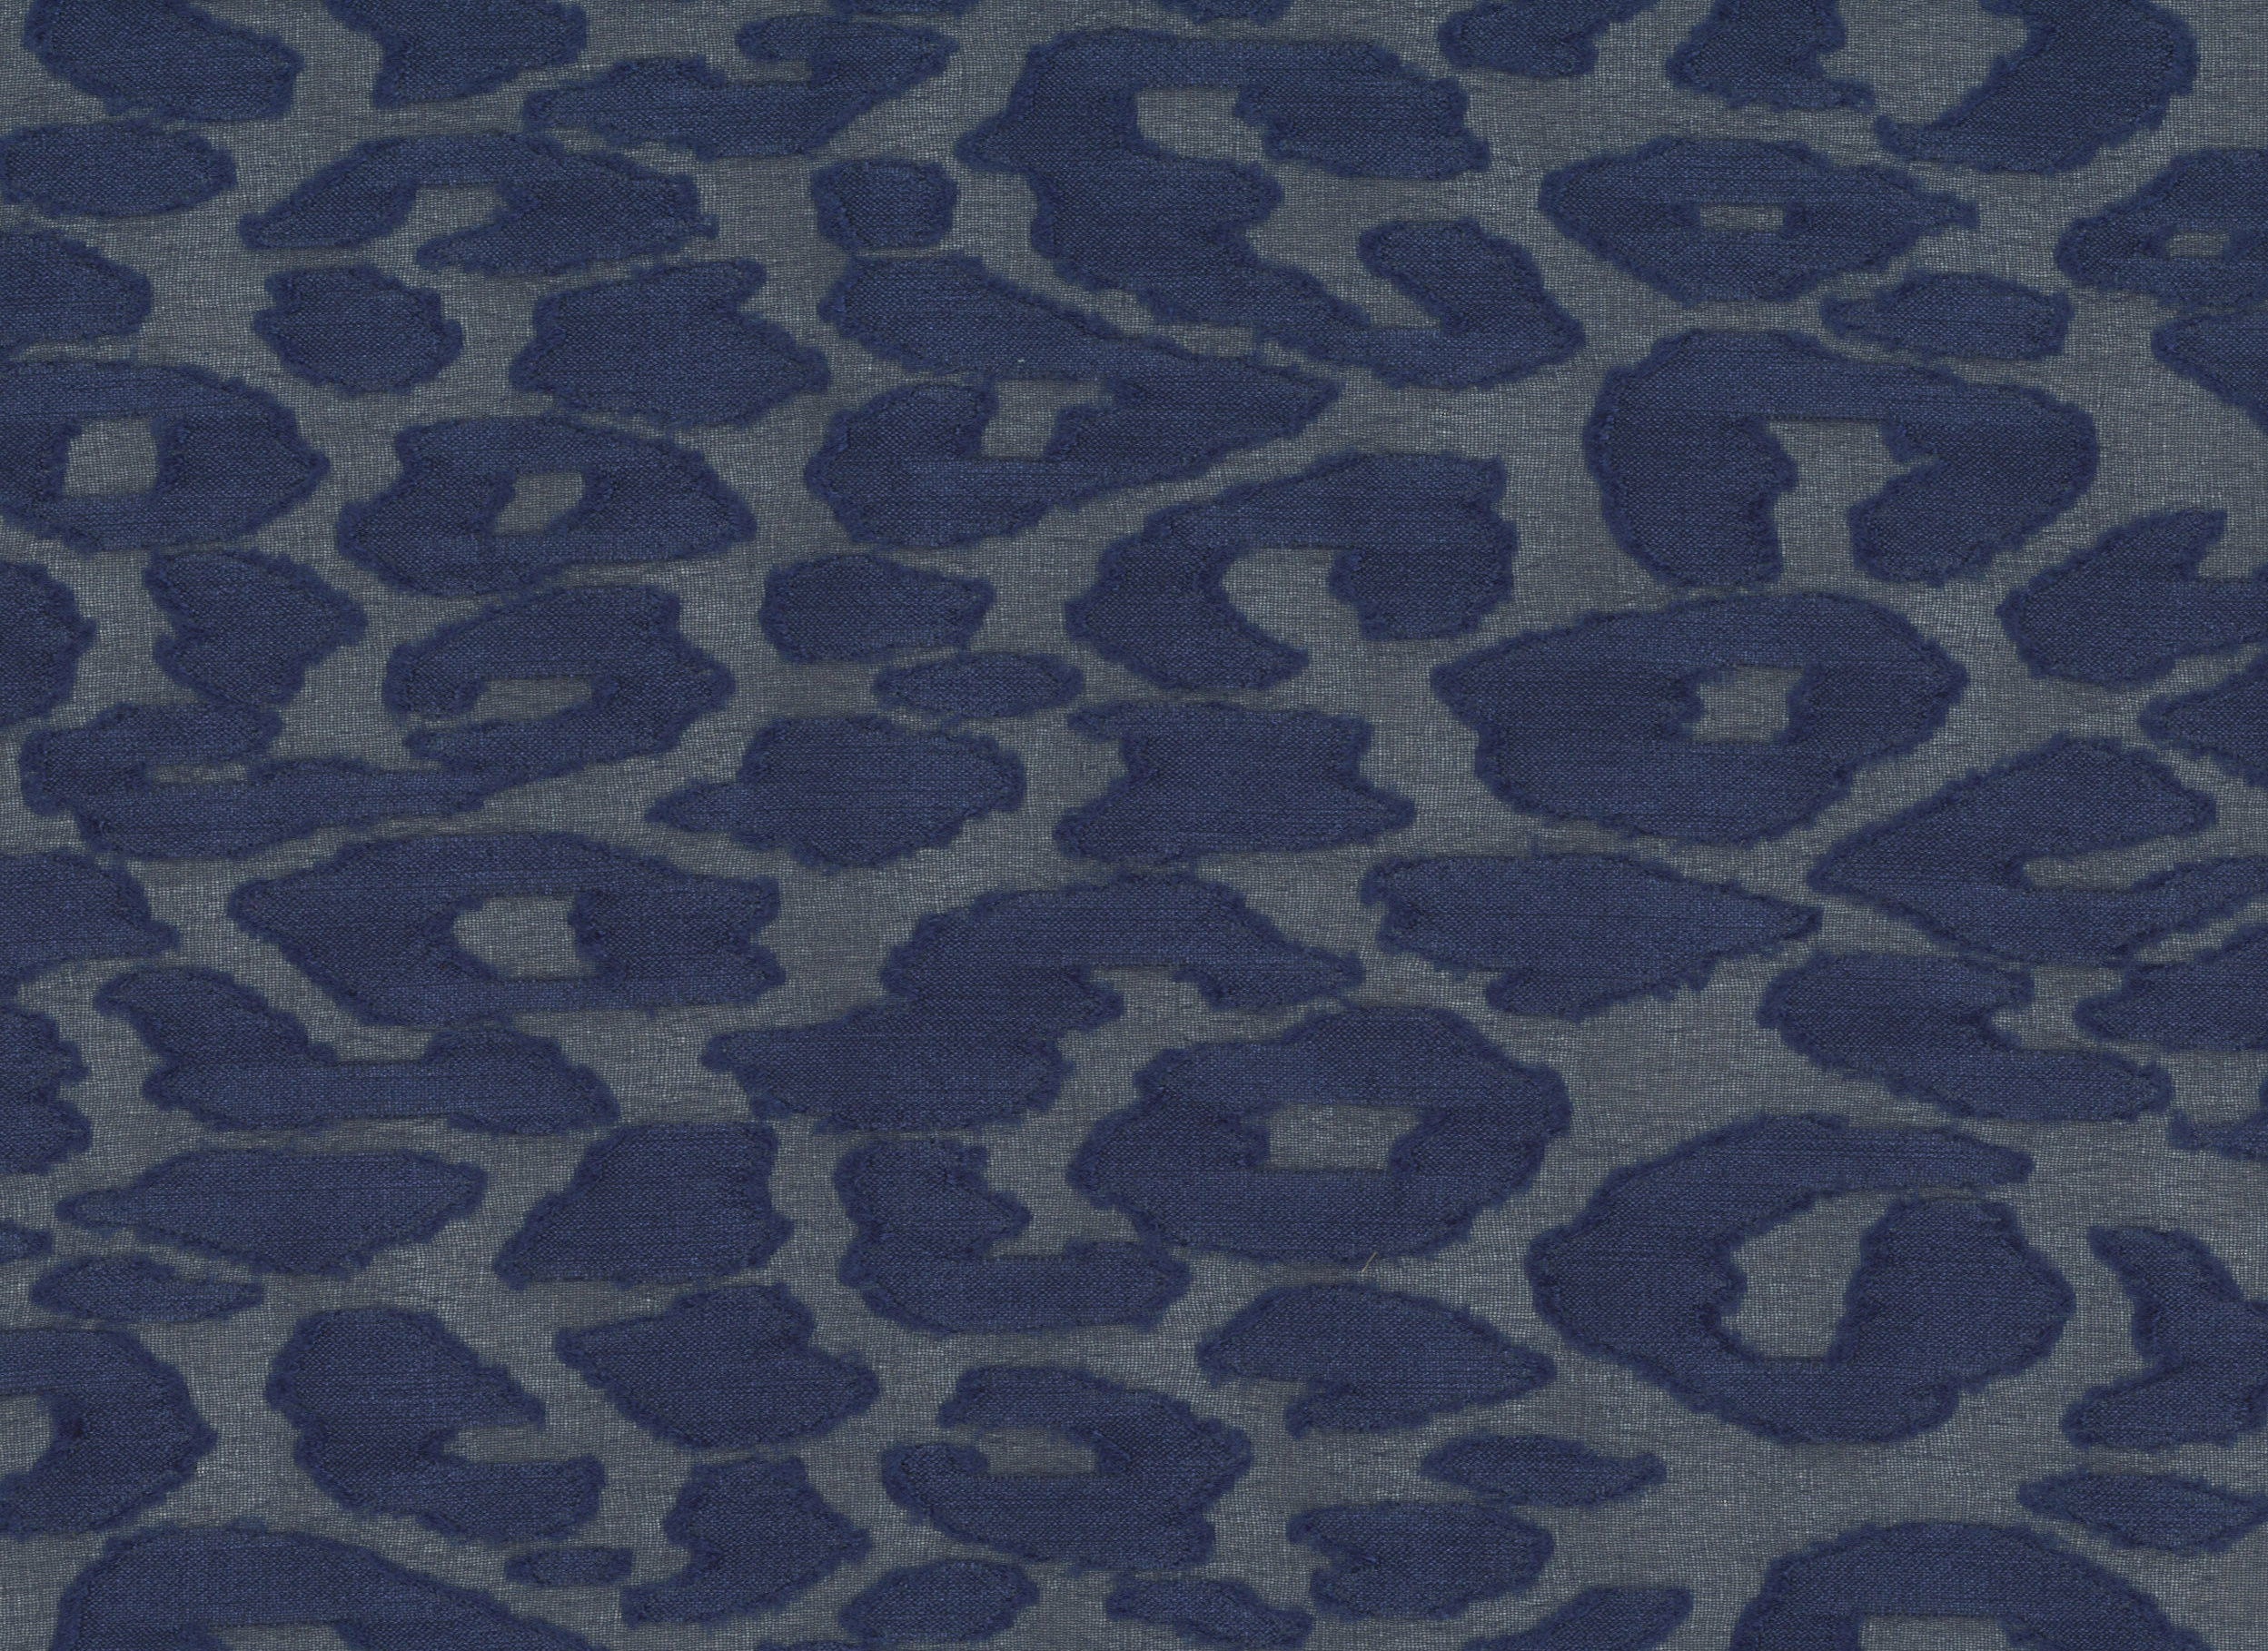 32001-08 Navy Chiffon Polyester Spots Jacquard Burn Out Plain Dyed 100% blue burn out jacquard polyester woven Chiffon, Jacquard, Burn-Out - knit fabric - woven fabric - fabric company - fabric wholesale - fabric b2b - fabric factory - high quality fabric - hong kong fabric - fabric hk - acetate fabric - cotton fabric - linen fabric - metallic fabric - nylon fabric - polyester fabric - spandex fabric - chun wing hing - cwh hk - fabric worldwide ship - 針織布 - 梳織布 - 布料公司- 布料批發 - 香港布料 - 秦榮興